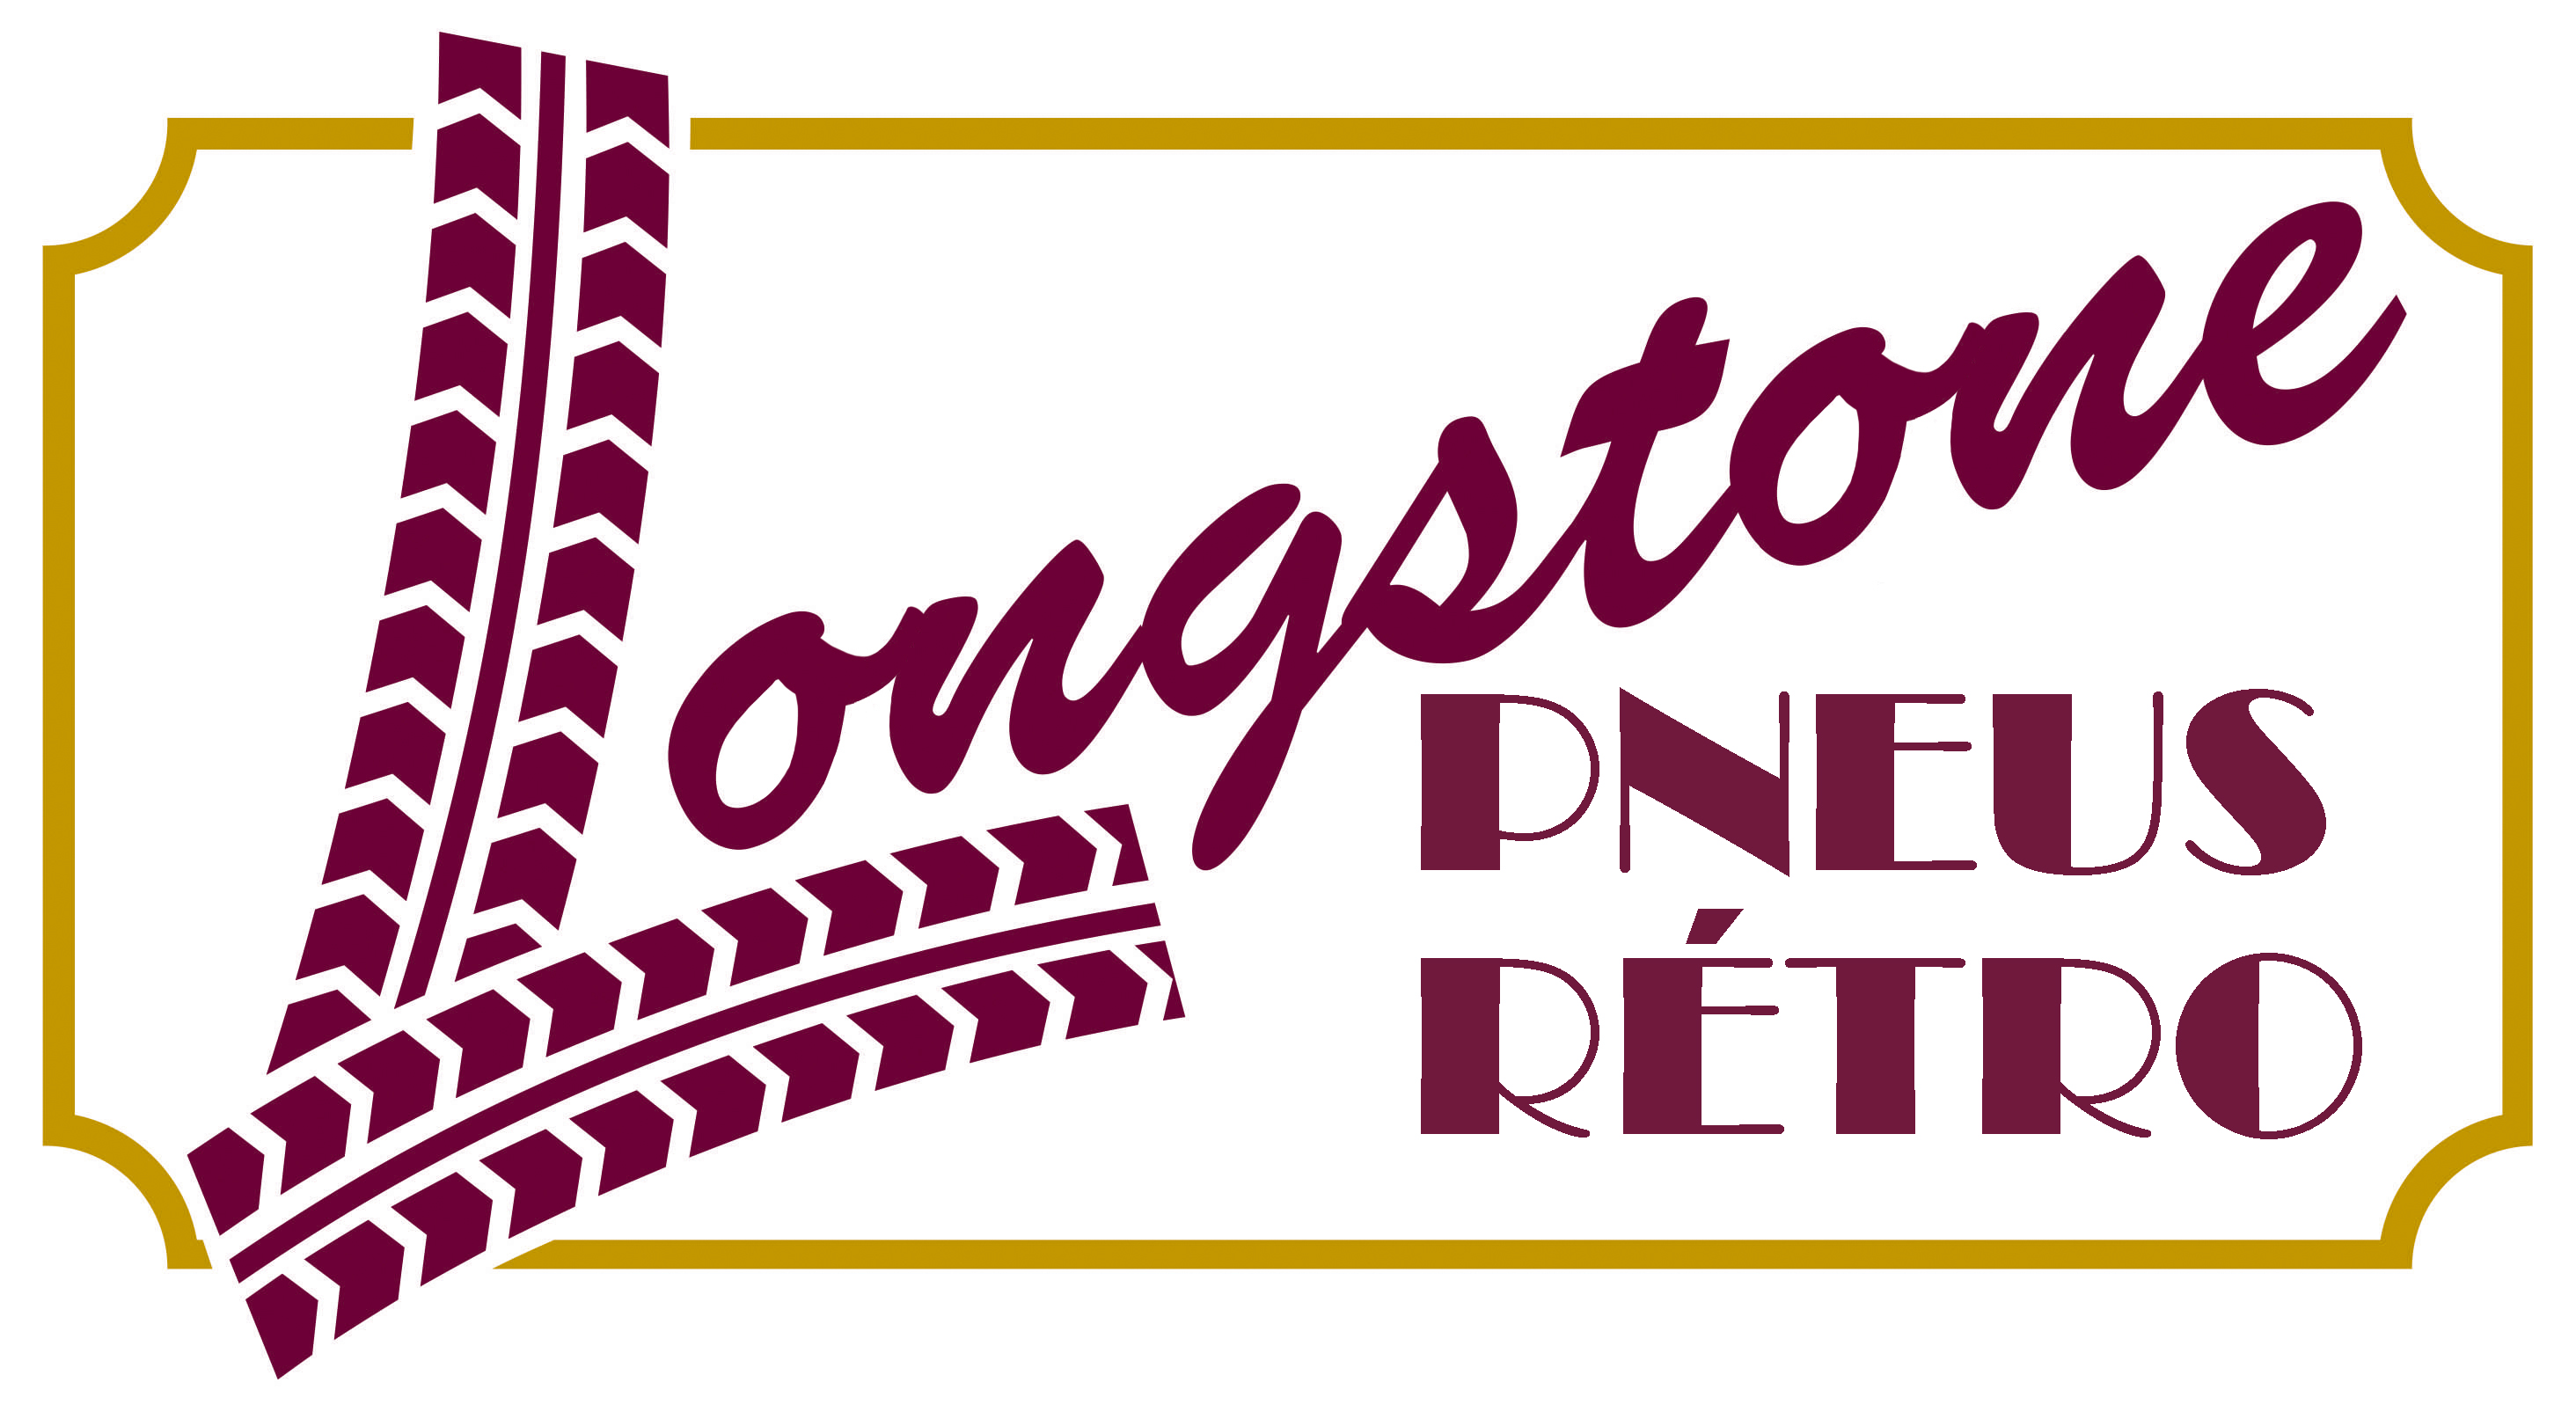 Longstonepneusretro logo